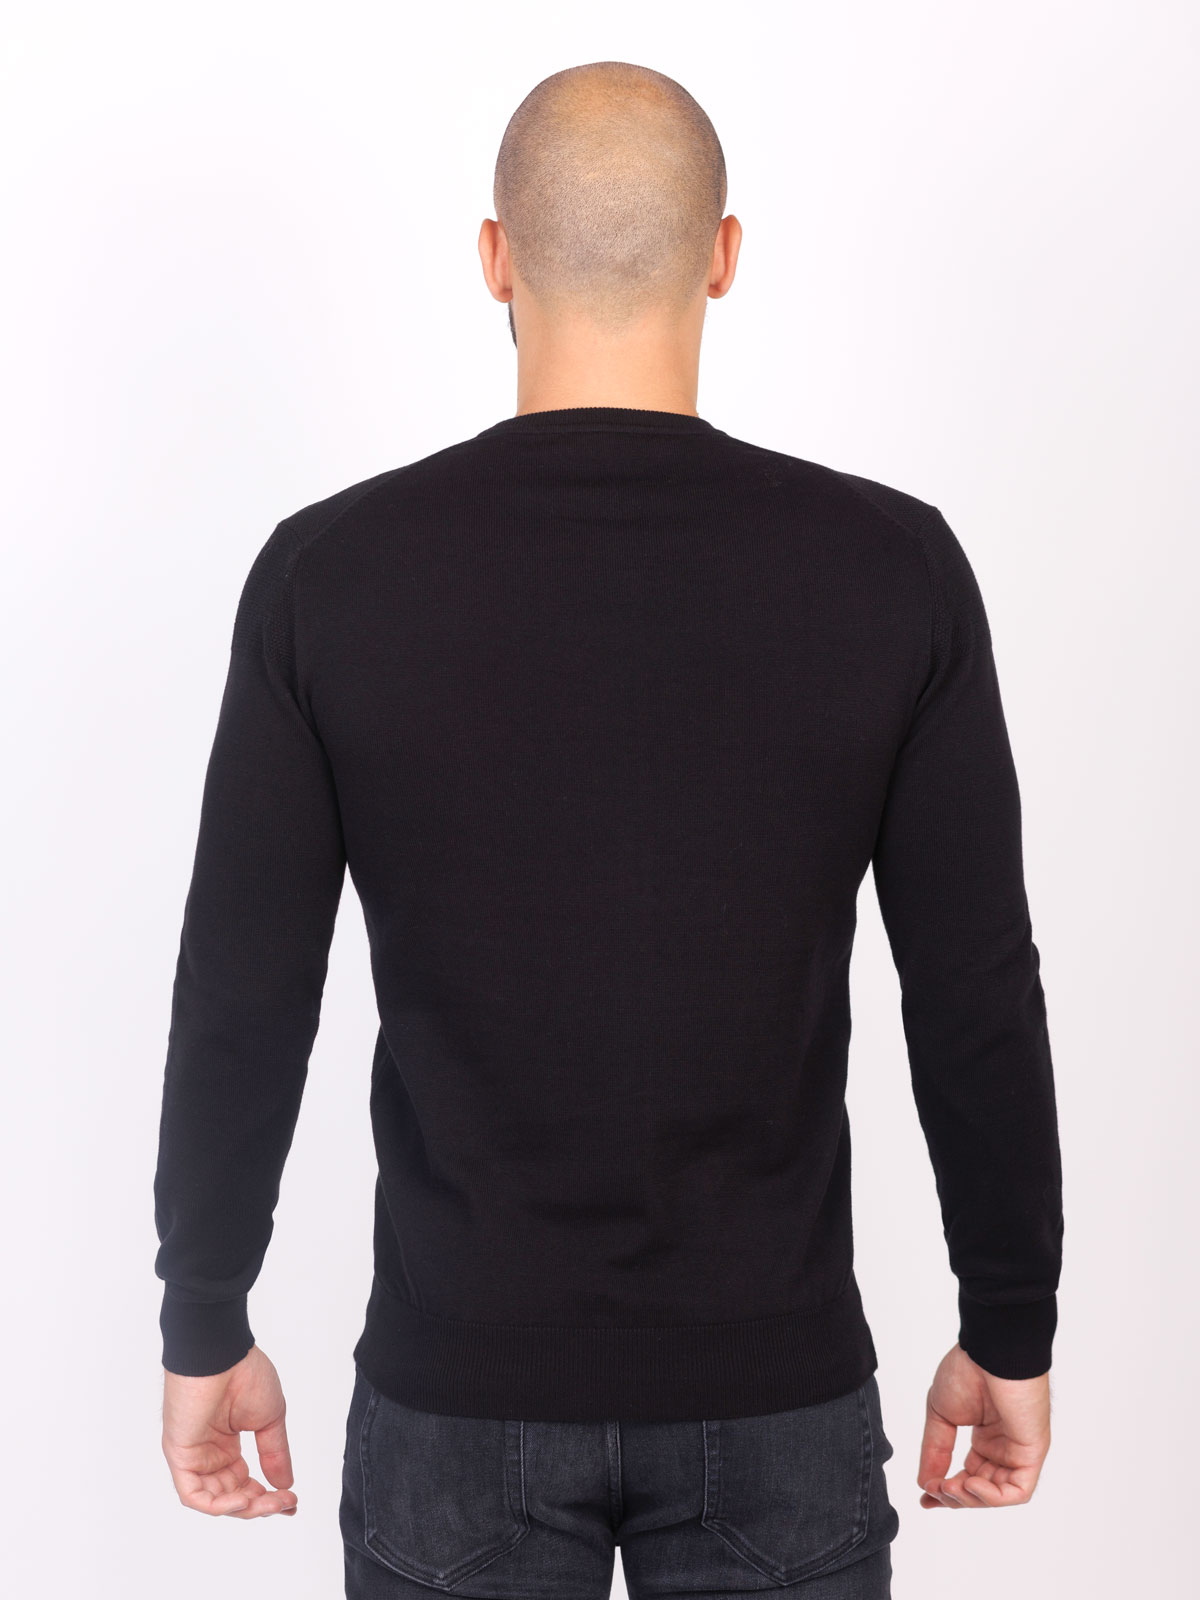 Ανδρική μπλούζα σε μαύρο χρώμα - 35290 € 39.93 img2